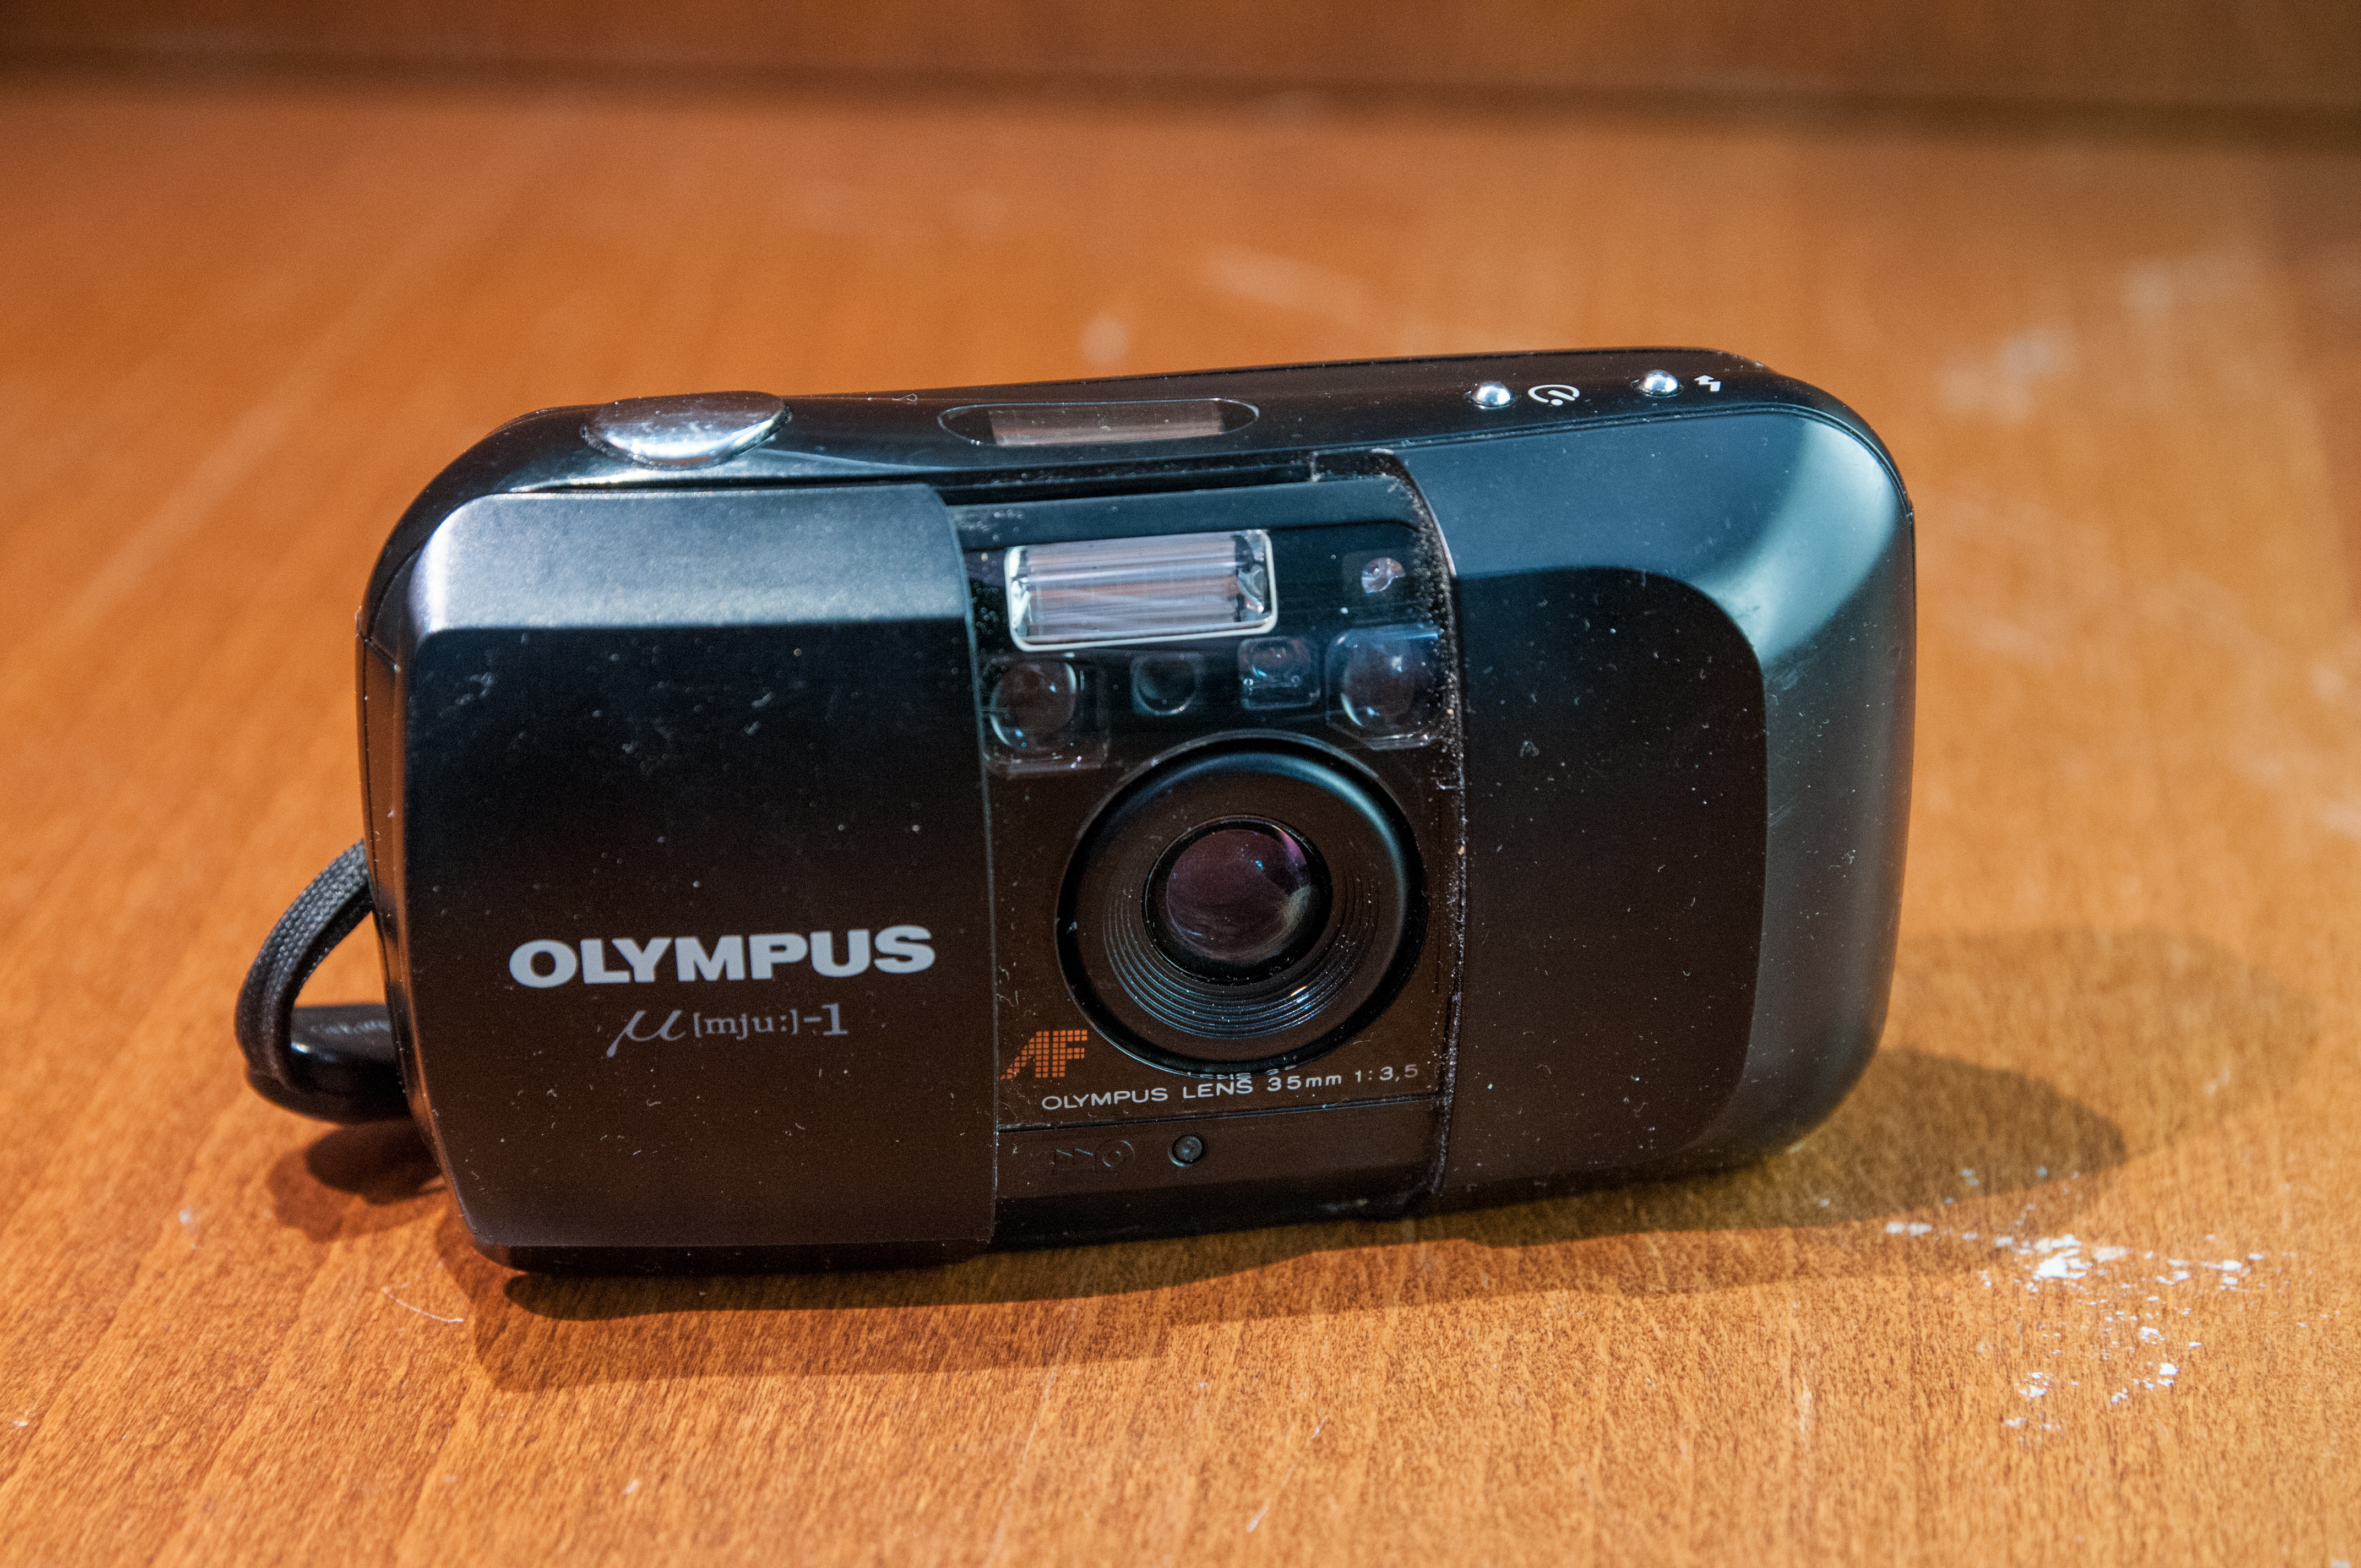 Vechter Knorrig antwoord Olympus MJU-1 35mm compact camera - Vintagelens